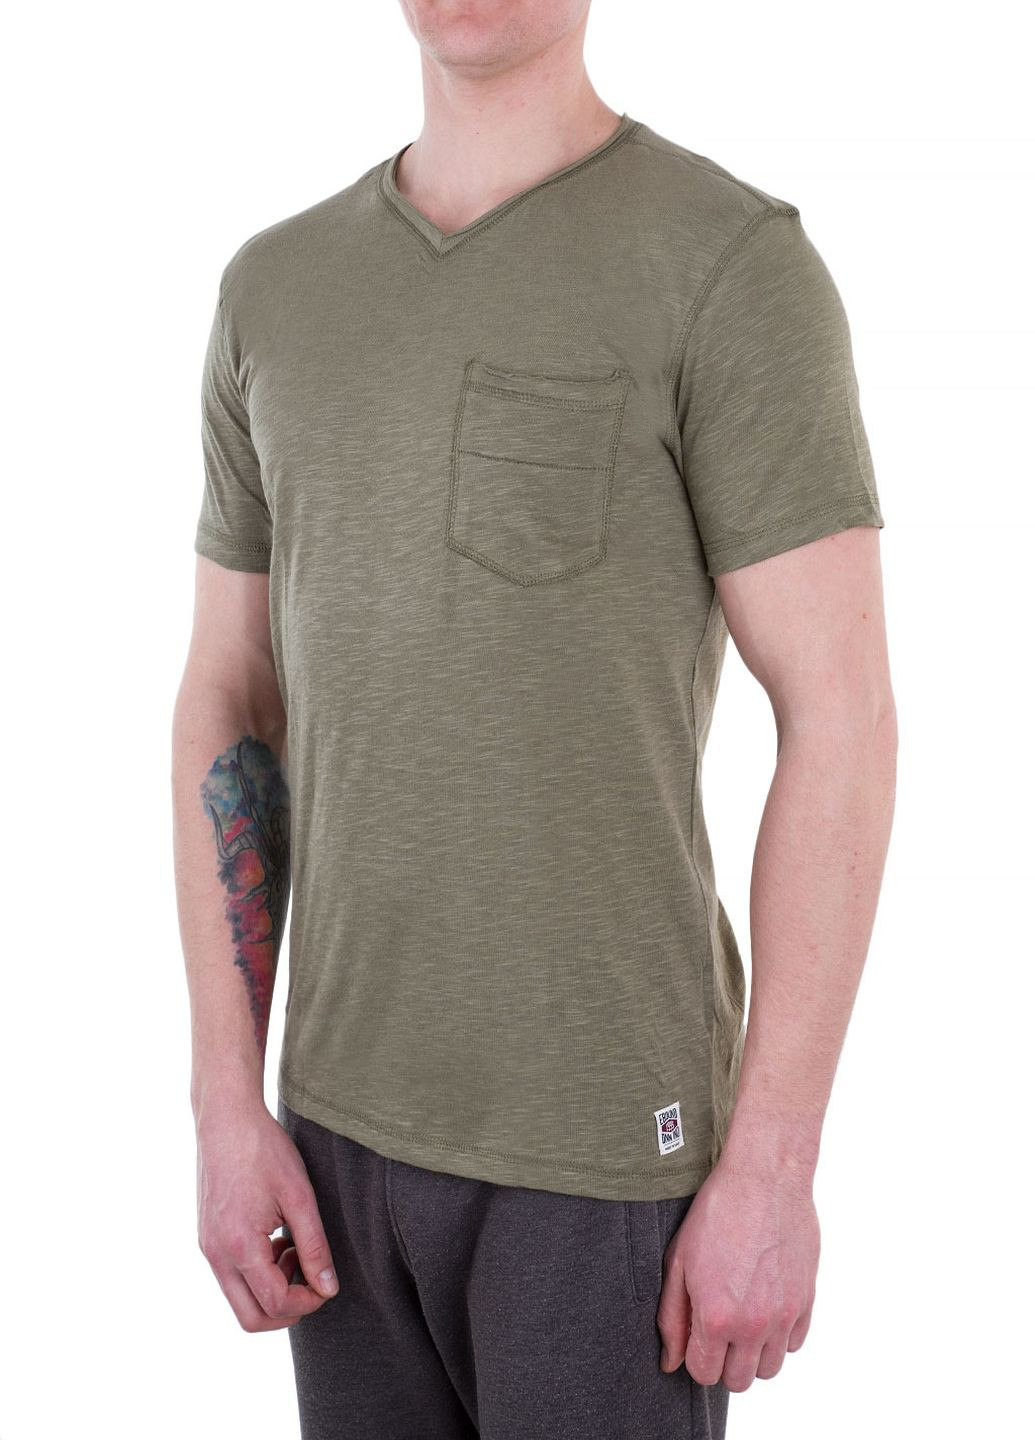 Хаки (оливковая) футболка E-Bound